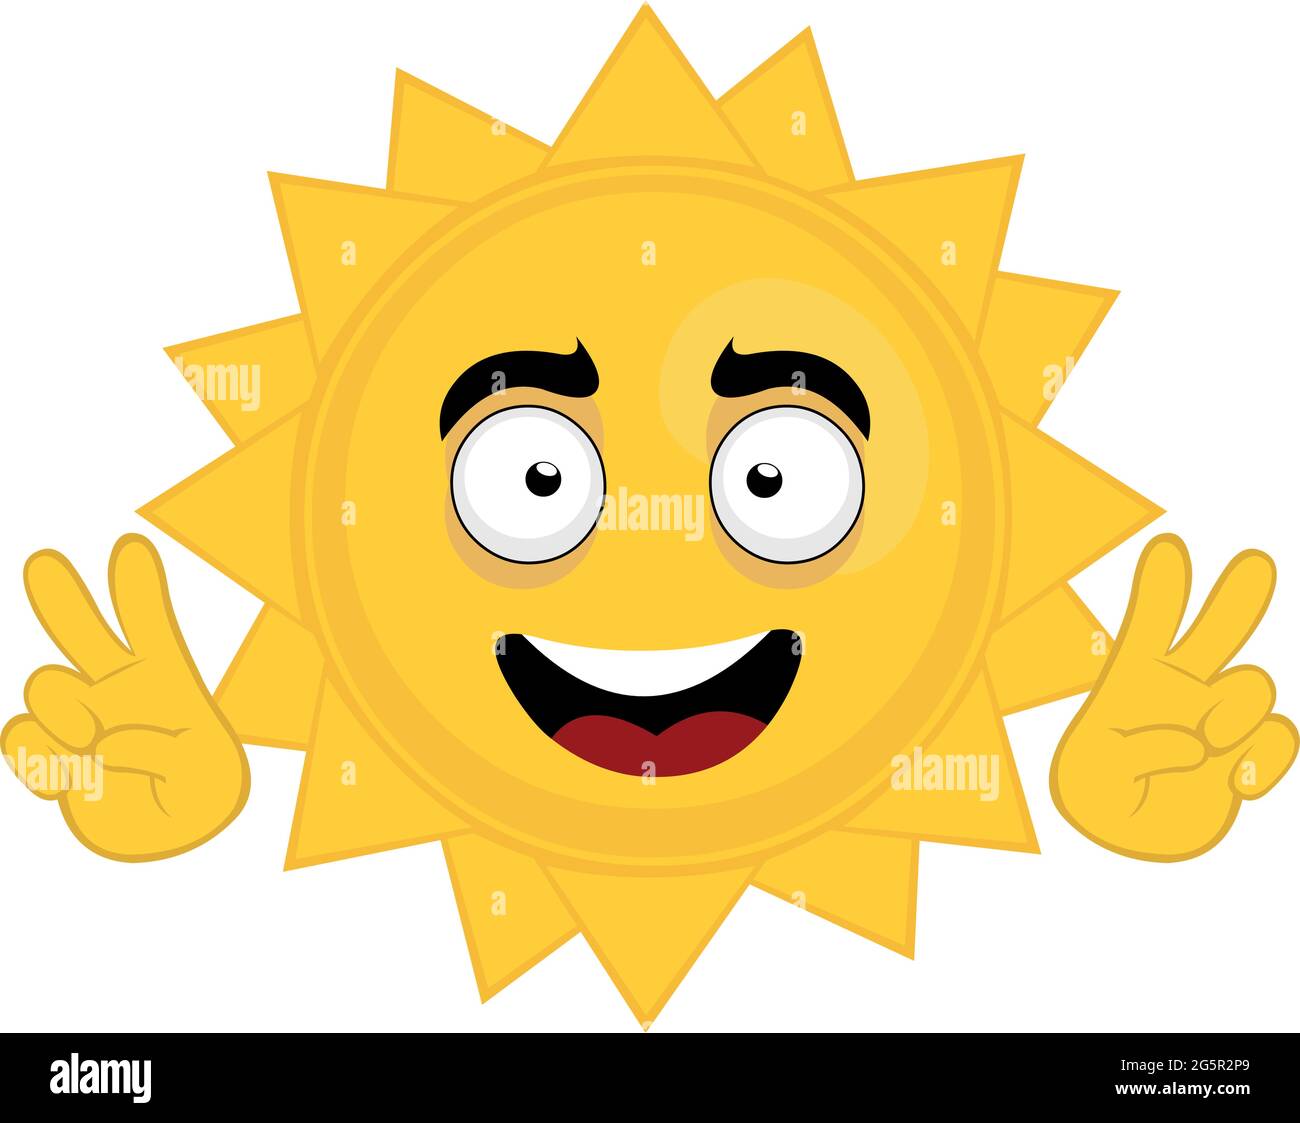 Illustrazione vettoriale di fumetto personaggio emoticon del sole facendo un gesto con le mani del simbolo di amore e pace o vittoria v Illustrazione Vettoriale